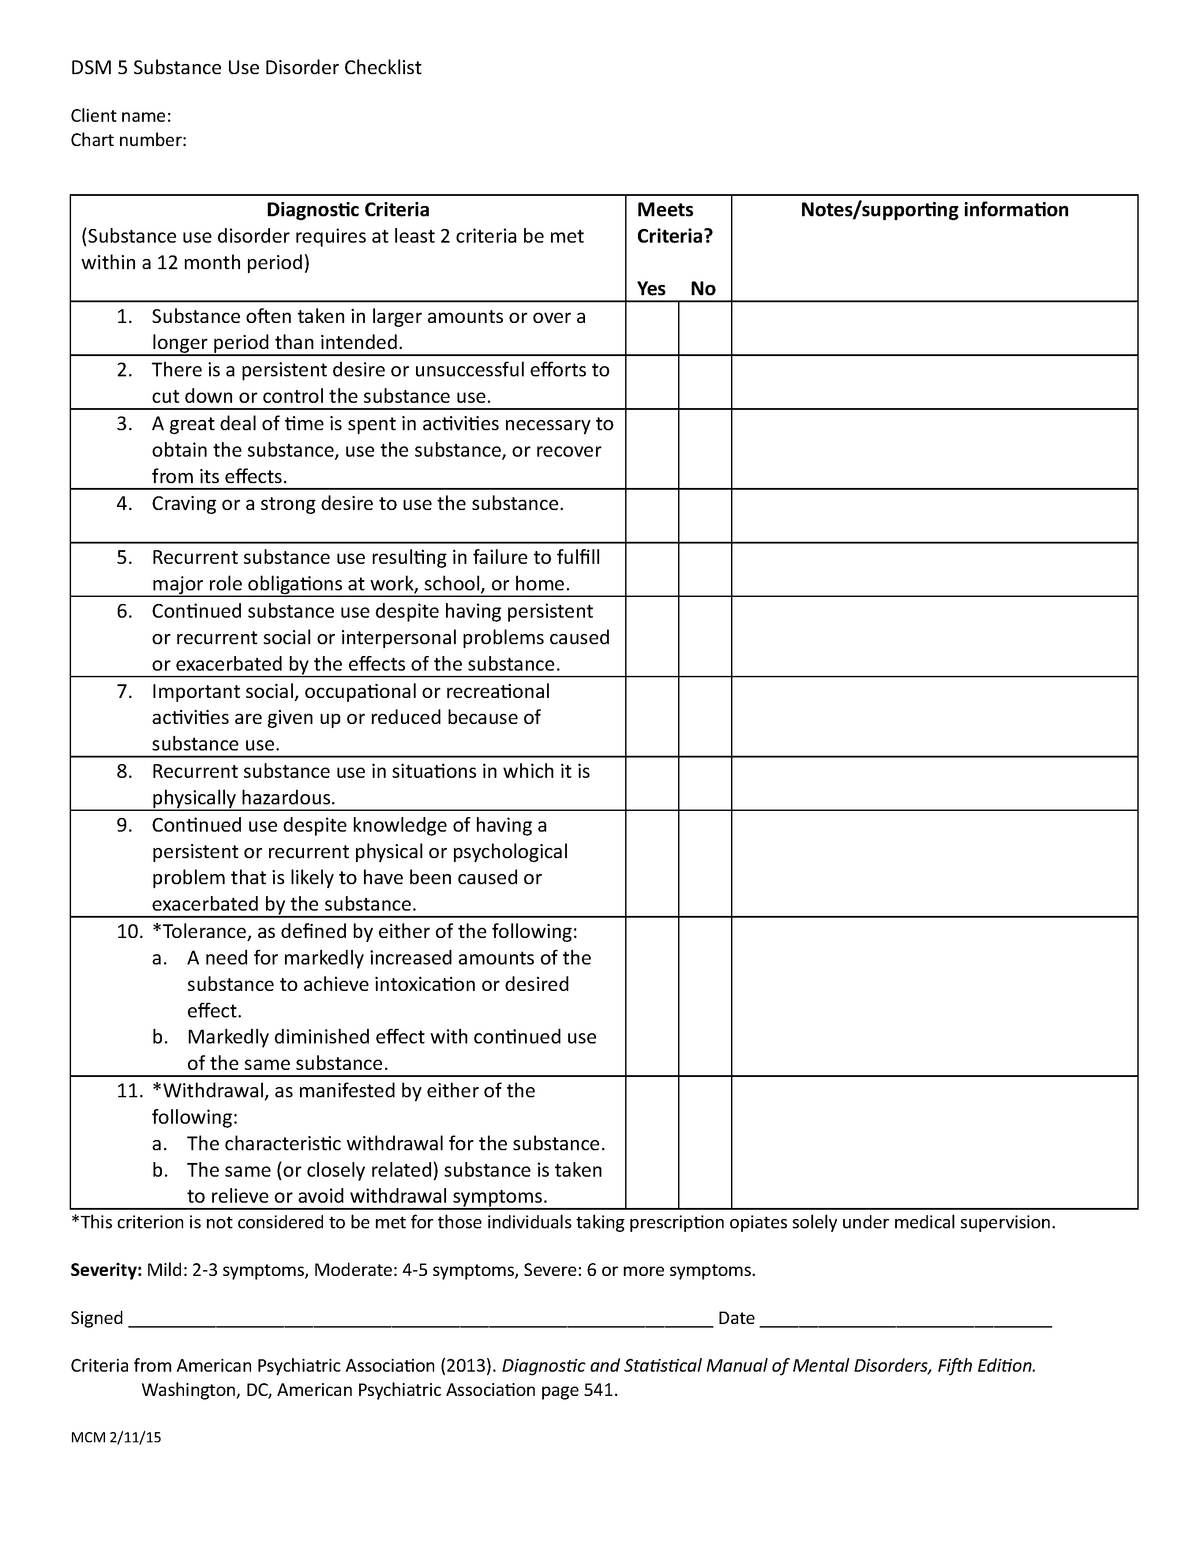 dsm 5 assessment for asd pdf